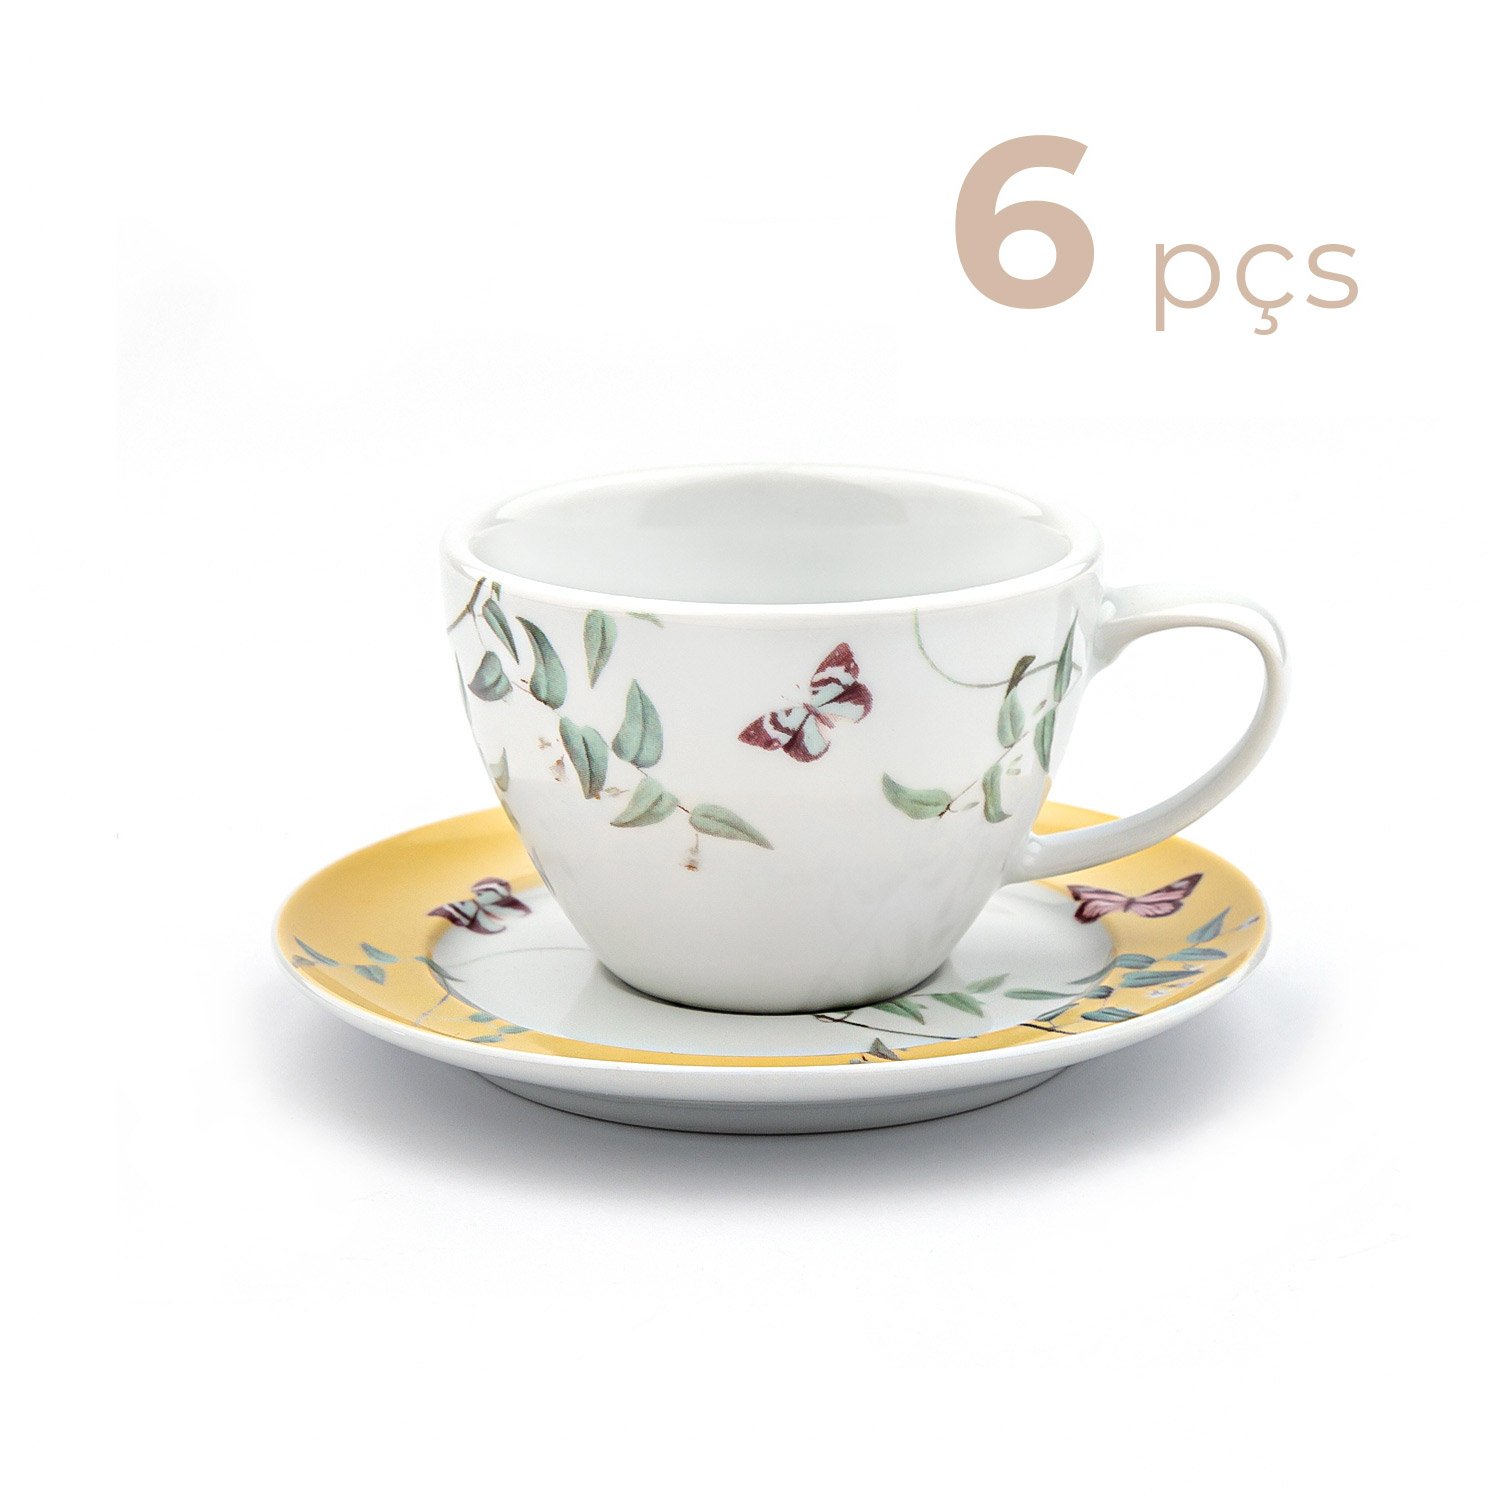 320 melhor ideia de Jogo de chá porcelana